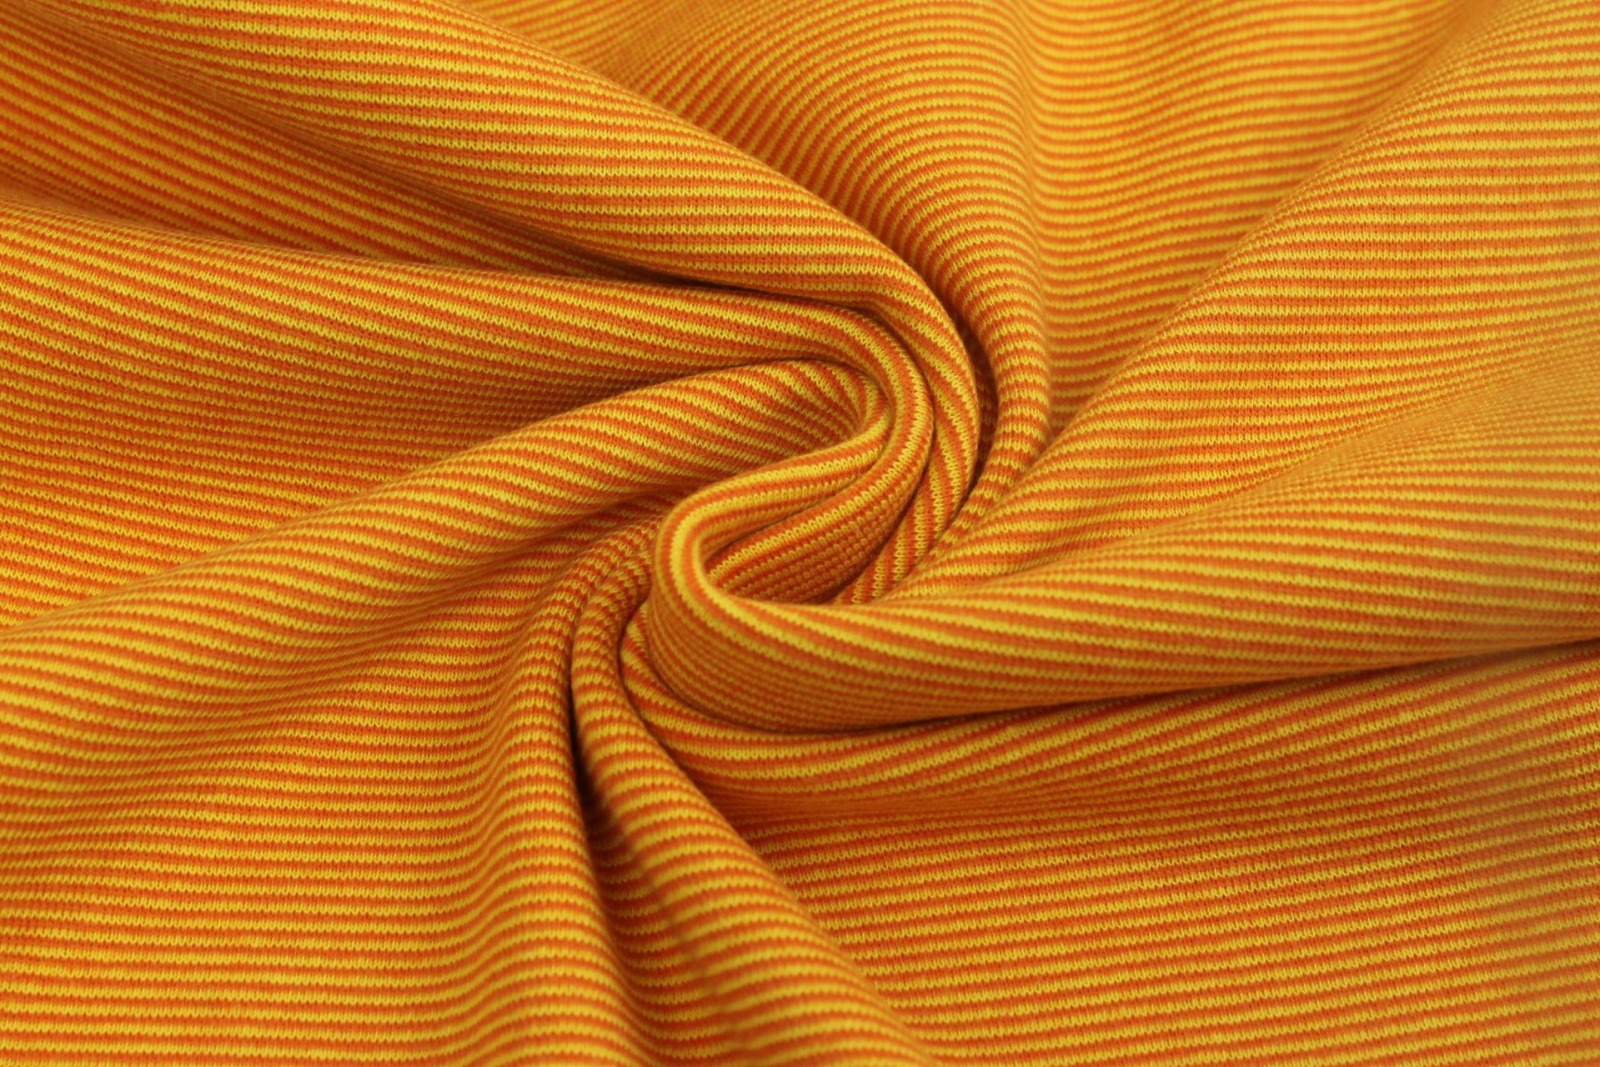 05m Ringelbündchen Bündchen glatt Streifen gelb orange 3